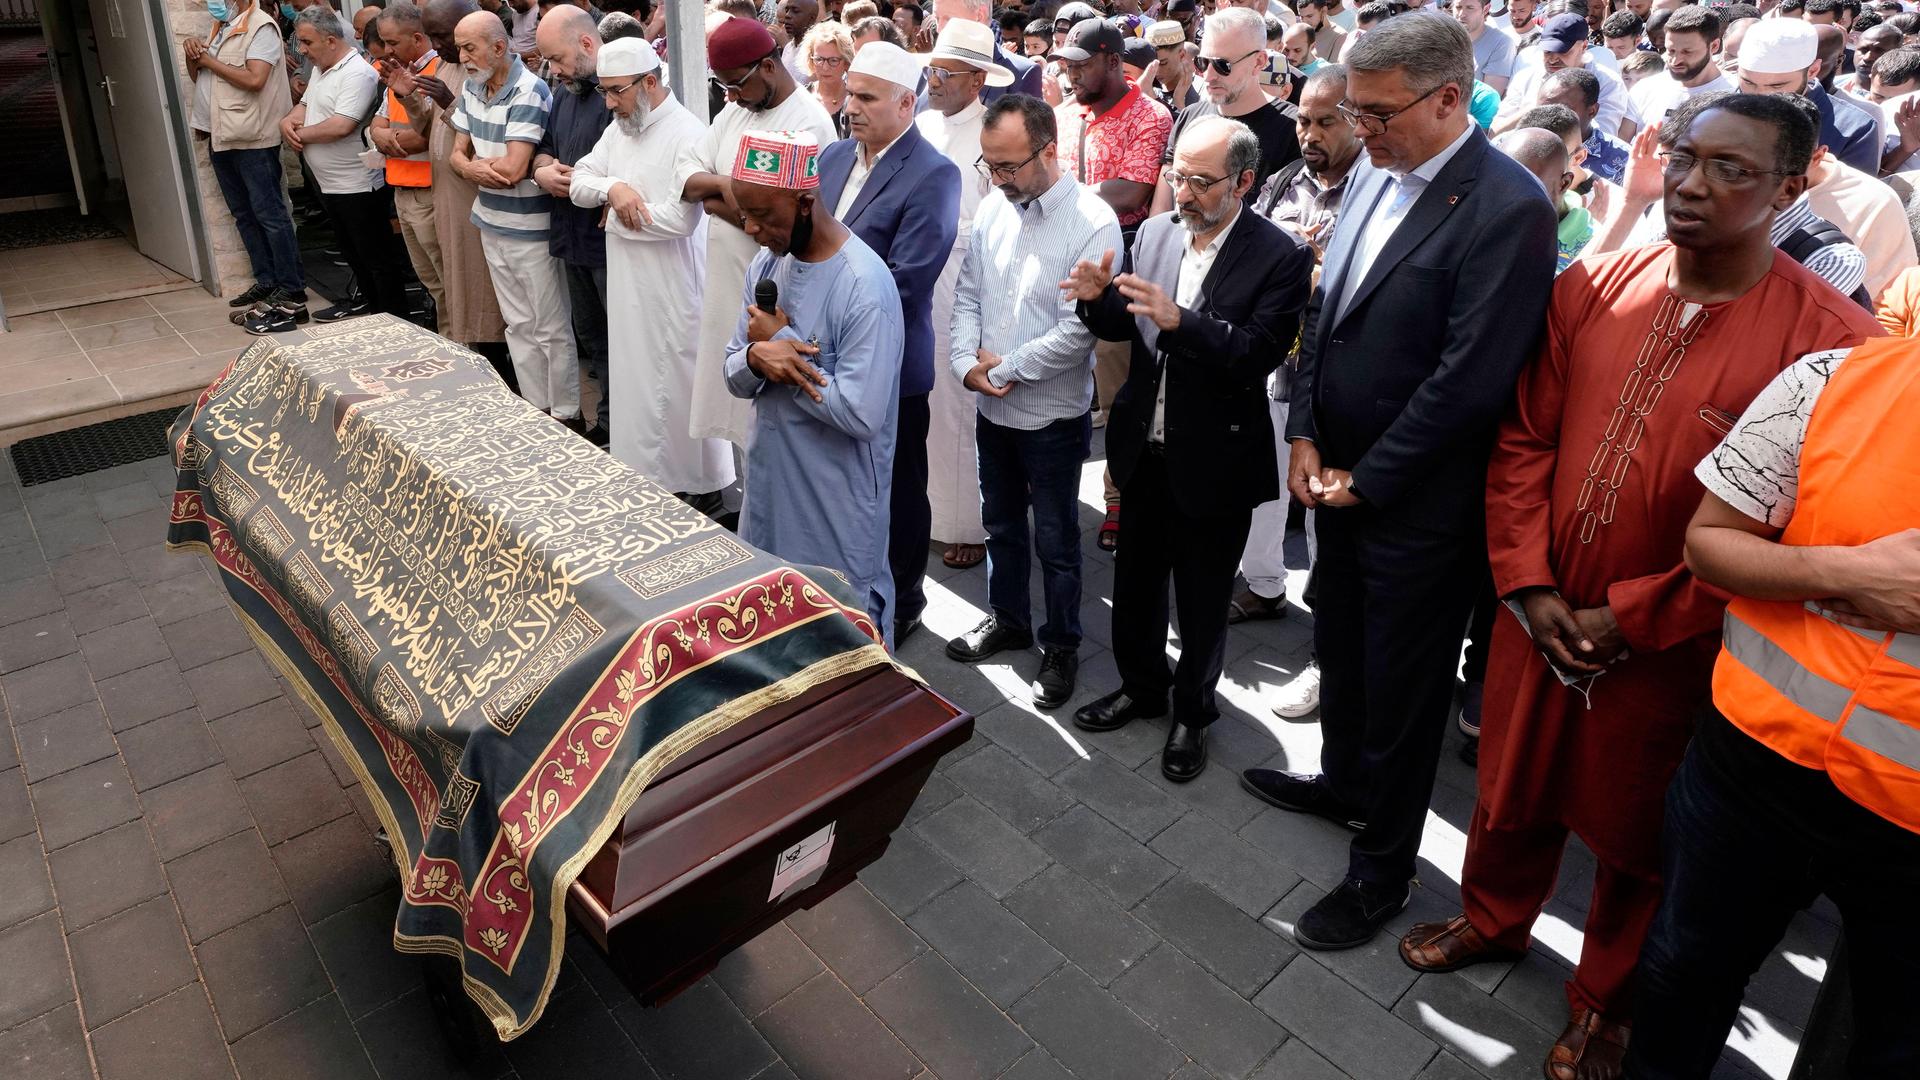 Trauerfeier am Freitag 12.08.2022 am Sarg des erschossenen 16-jährigen Geflüchteten im Innenhof der Abu-Bakr-Moschee in der Dortmunder Nordstadt